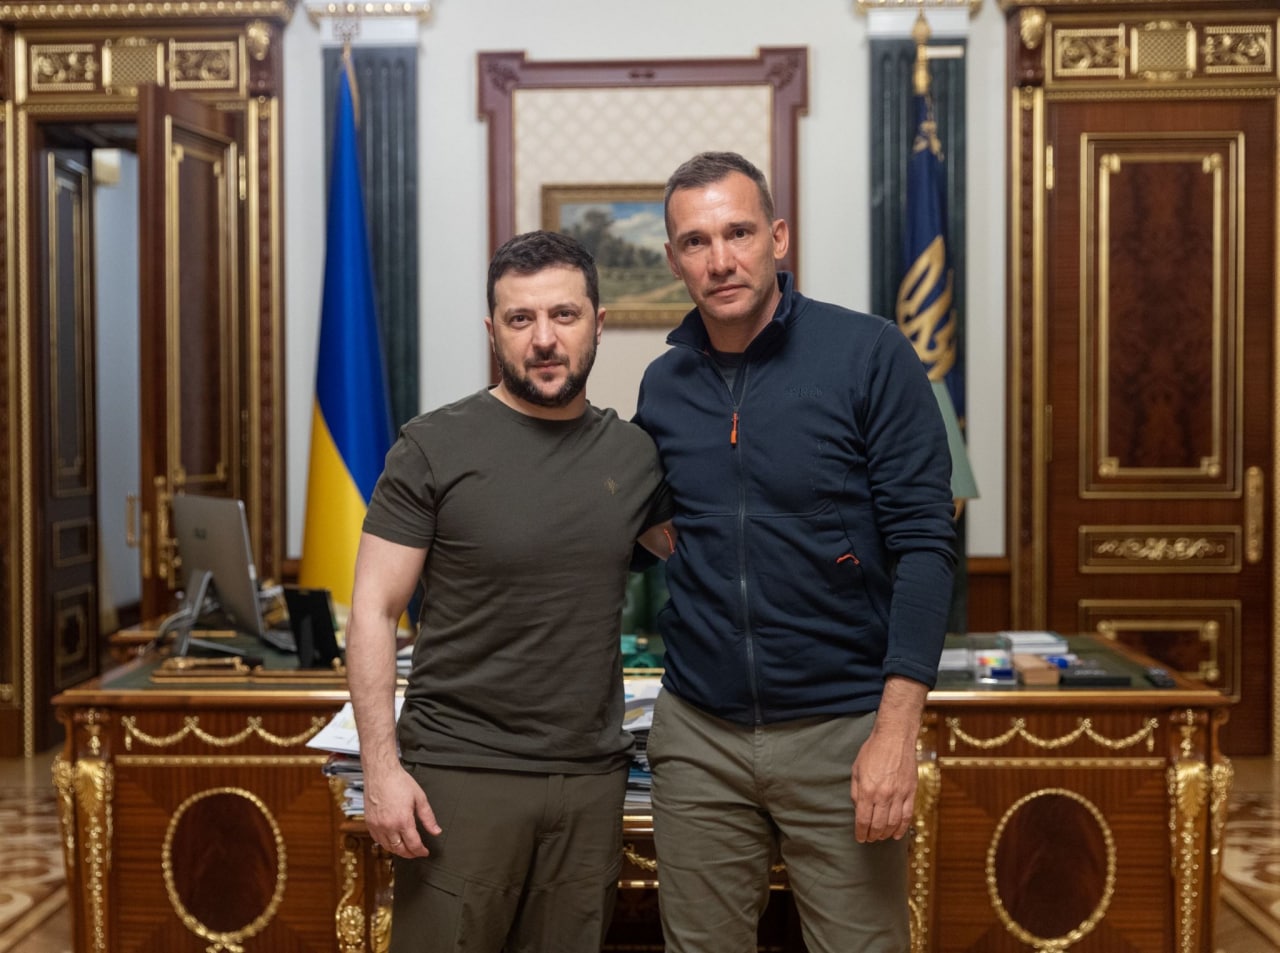 Амбасадором новоствореної платформи UNITED 24 став футболіст Андрій Шевченко